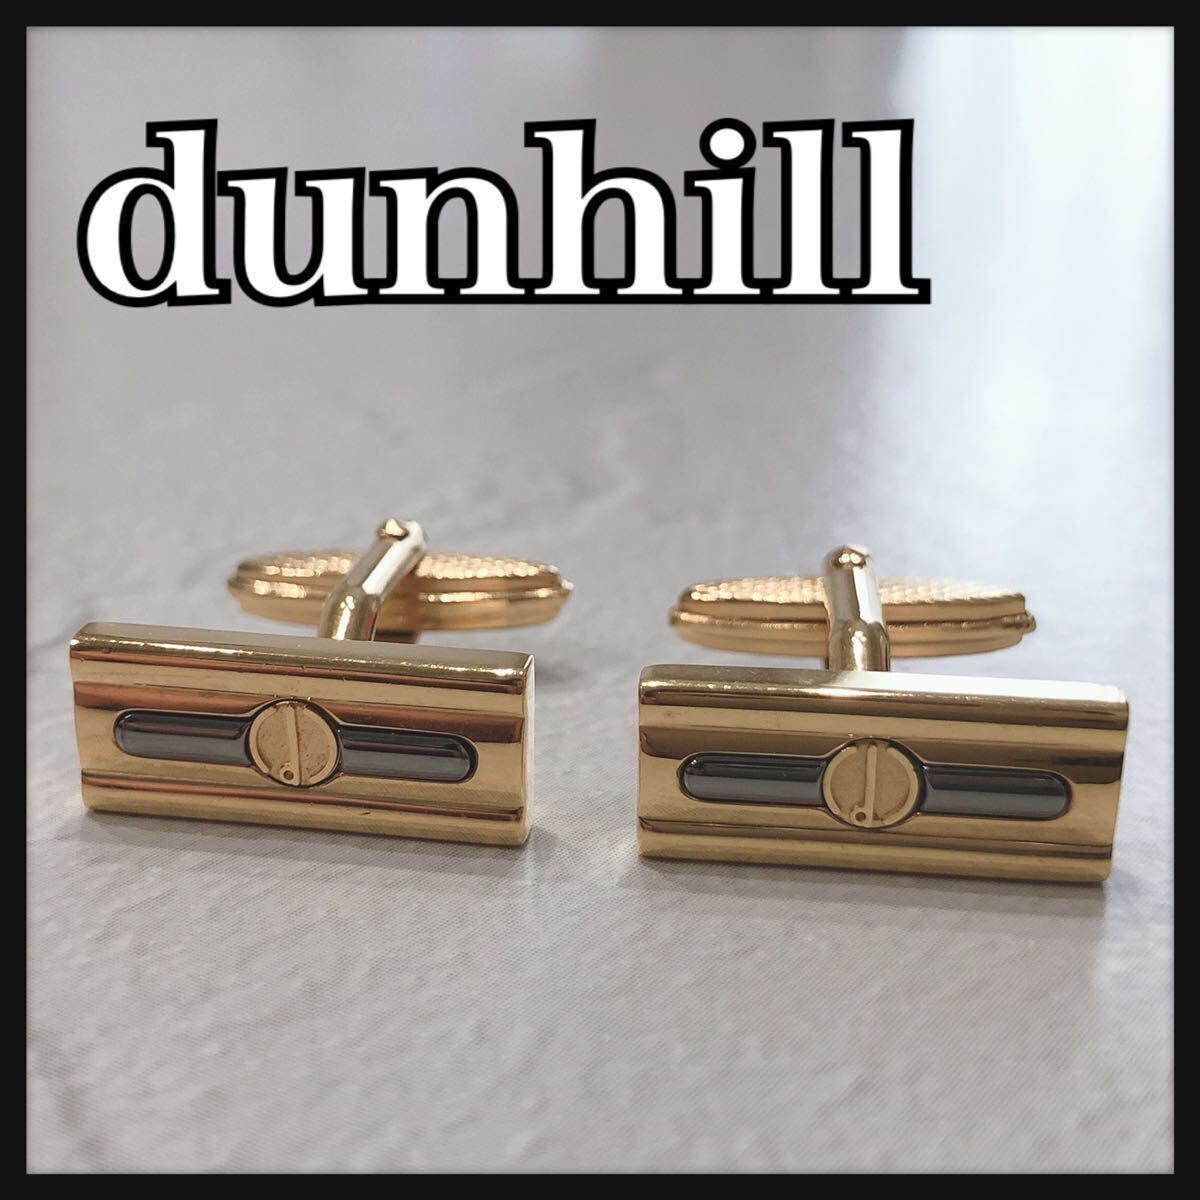 ☆ Dunhill ☆ Dunhill Mounts Monts Mounts Cuffs Butron Munics Gold Men Мужские мужские аксессуары